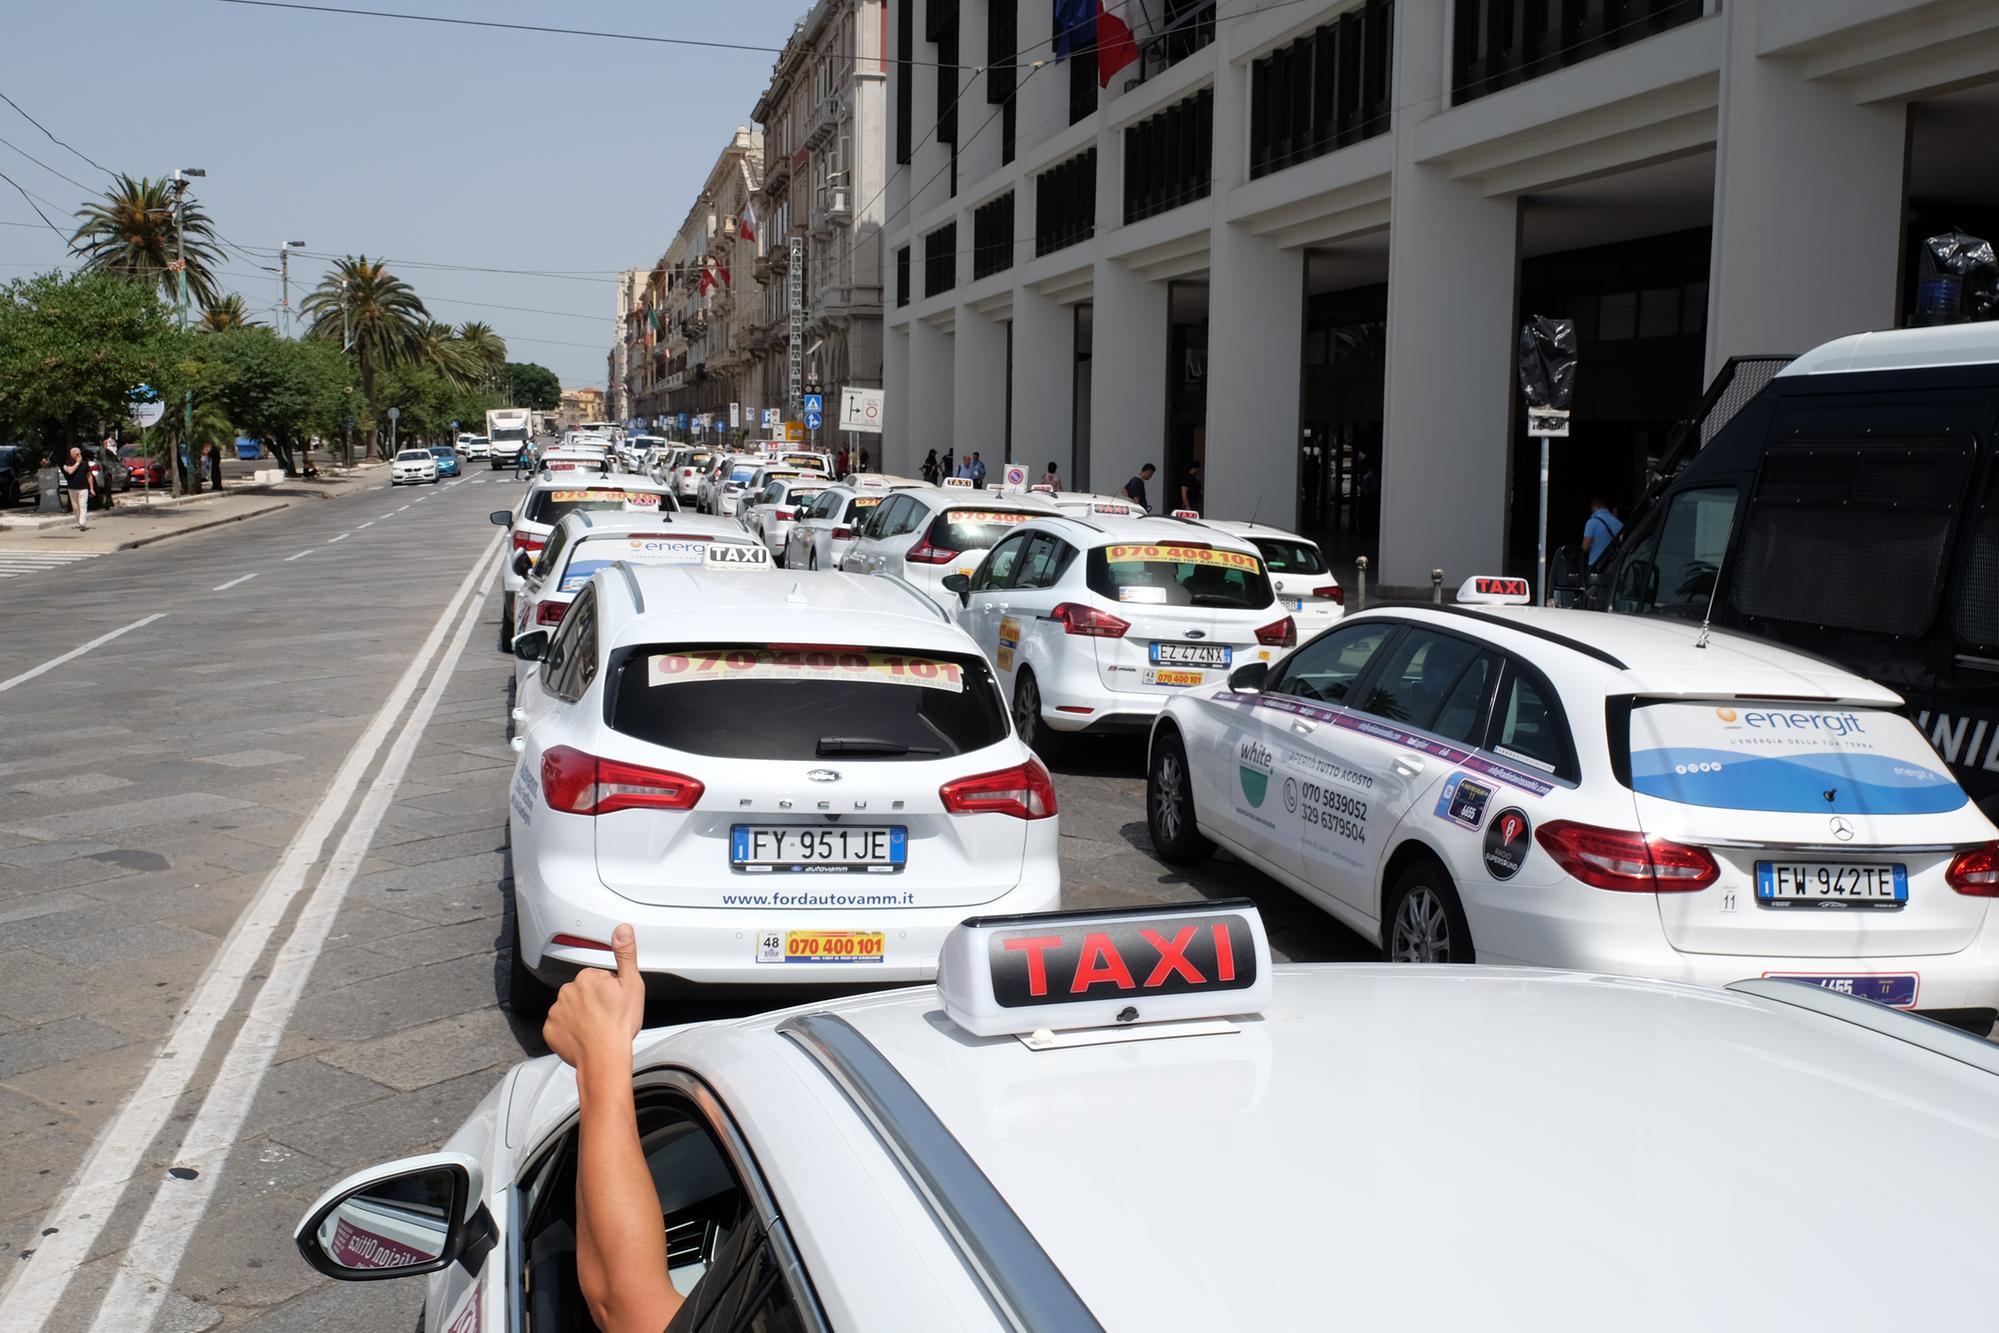 Centro città paralizzato, lo sciopero dei tassisti manda in tilt il traffico a Cagliari - VIDEO